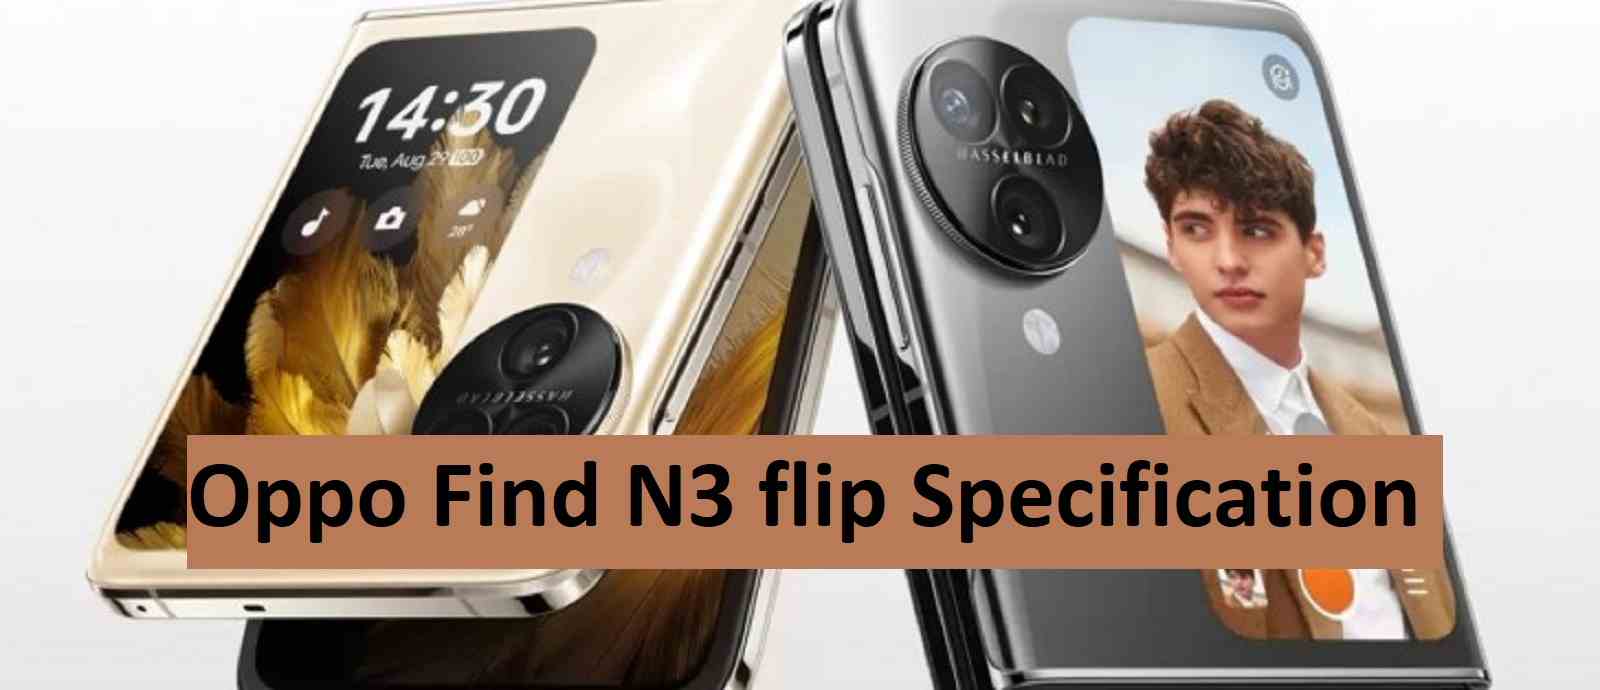 Oppo Find N3 flip Specification